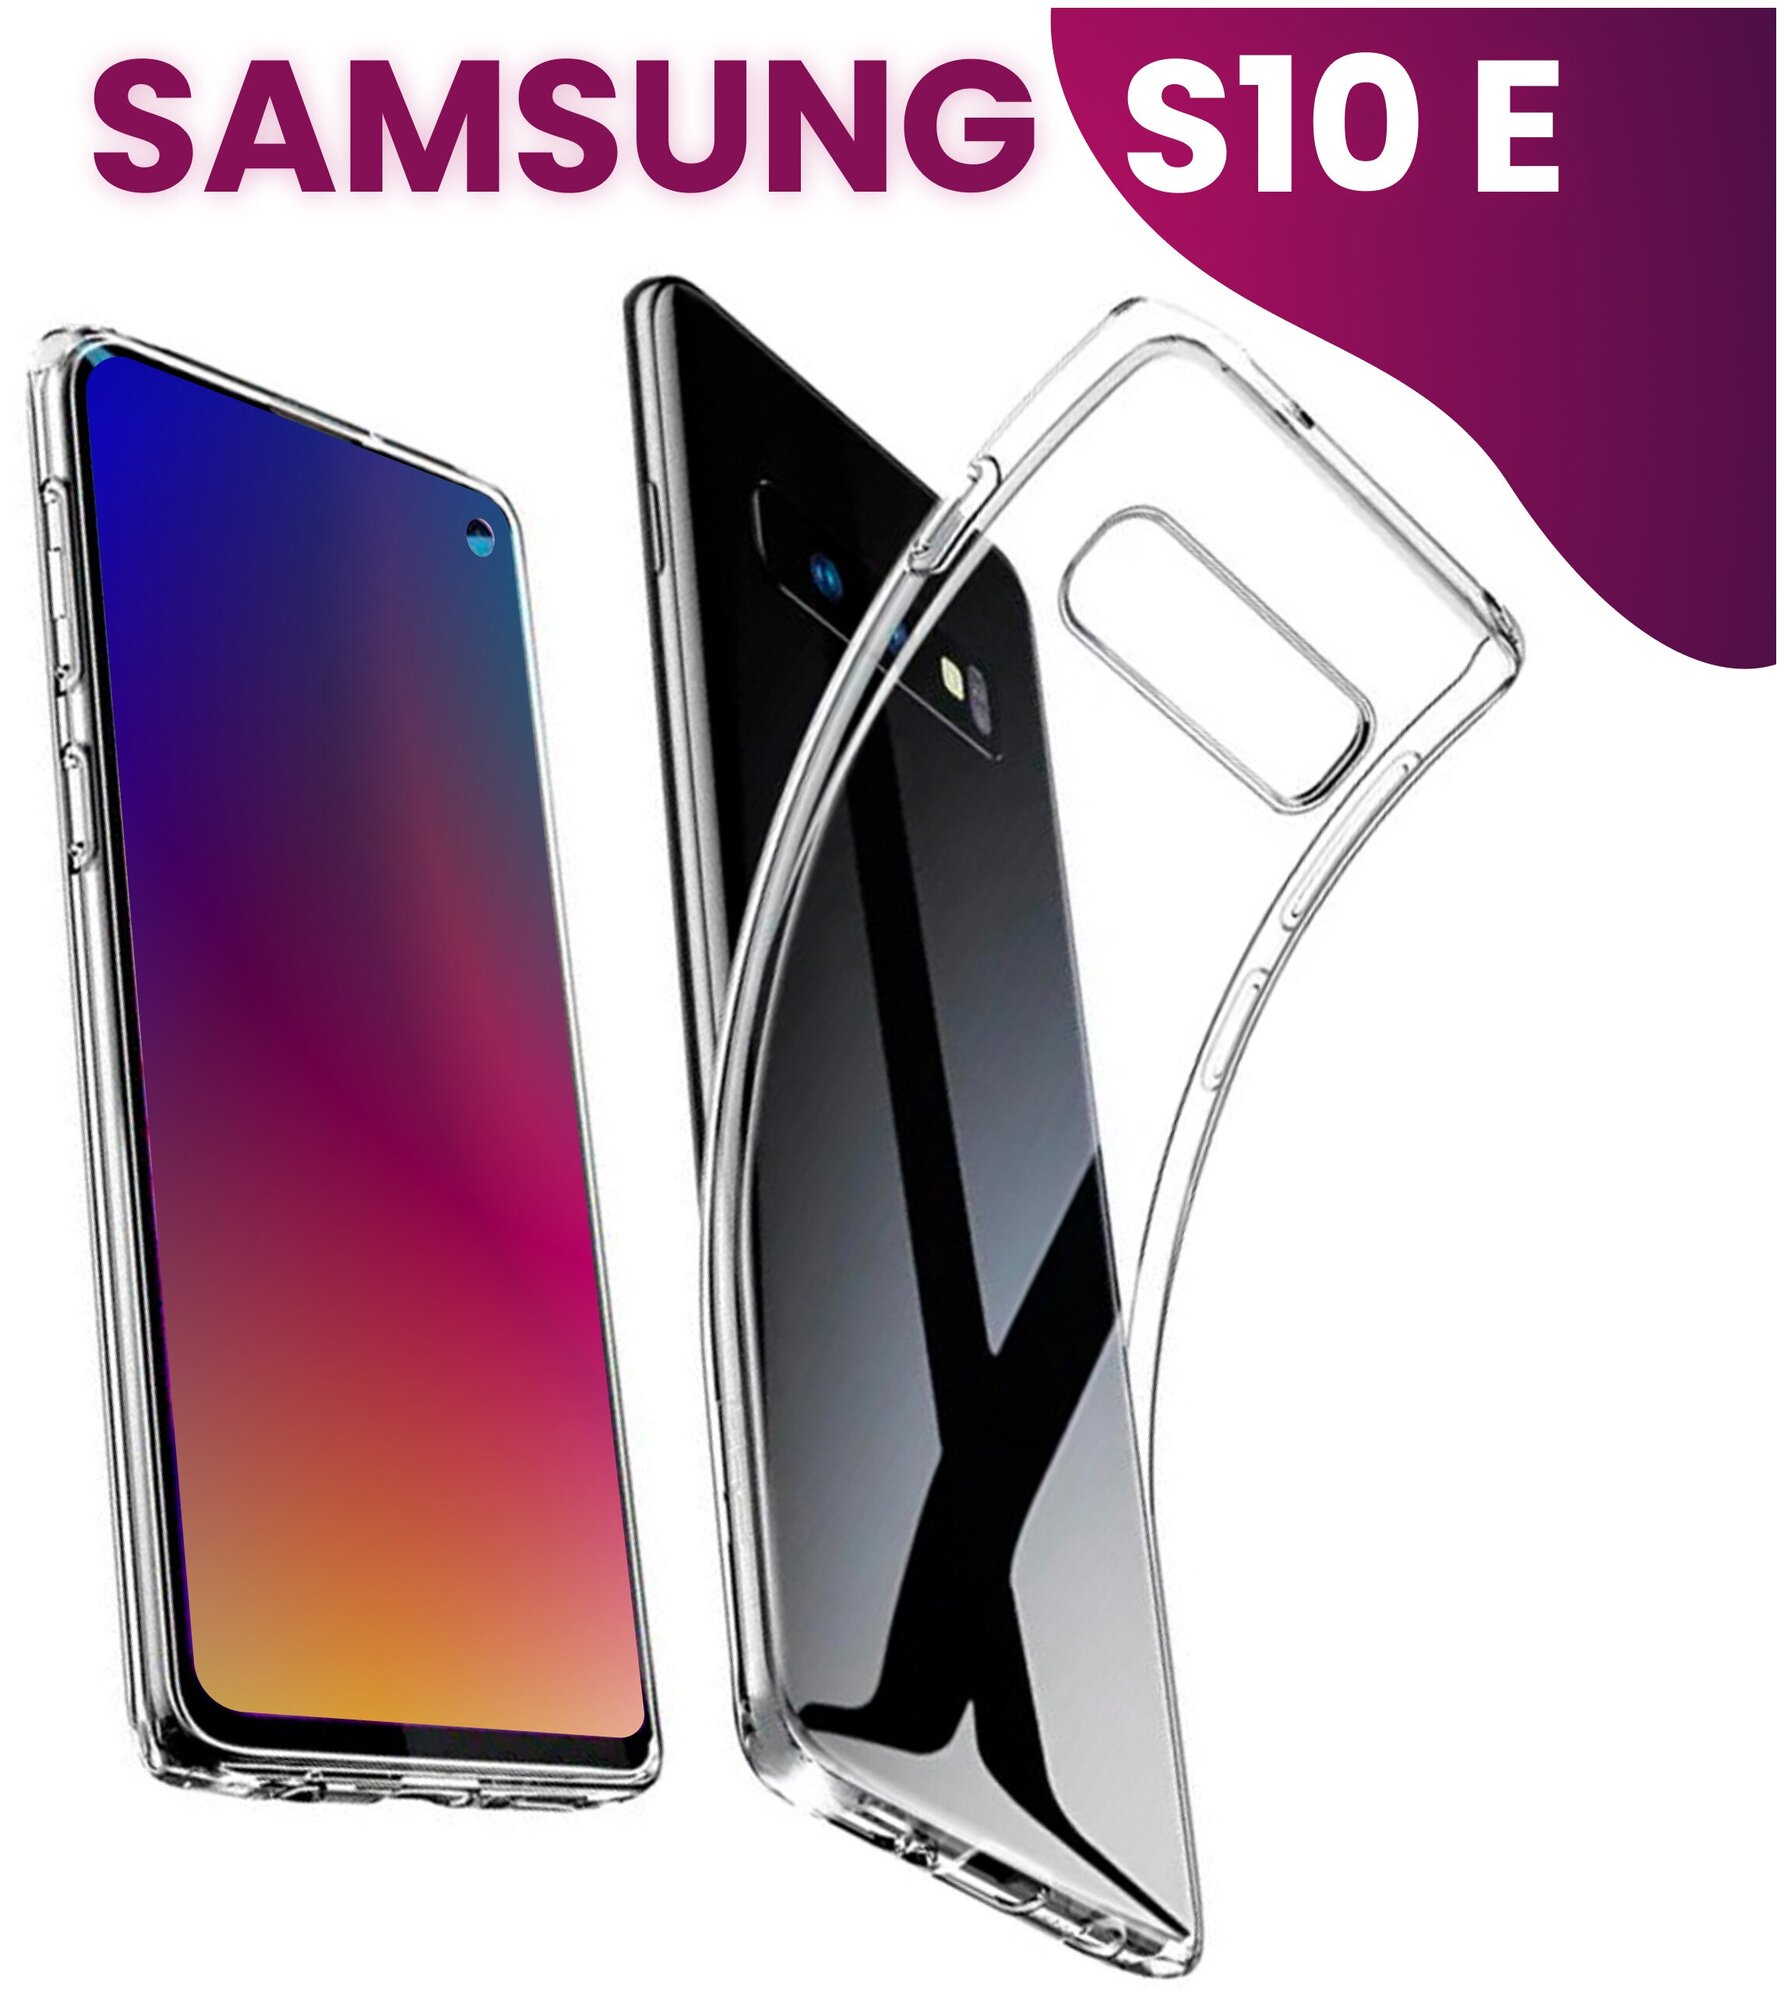 Ультратонкий силиконовый чехол для телефона Samsung Galaxy S10 E / Прозрачный защитный чехол для Самсунг Галакси Эс 10 Е / Premium силикон